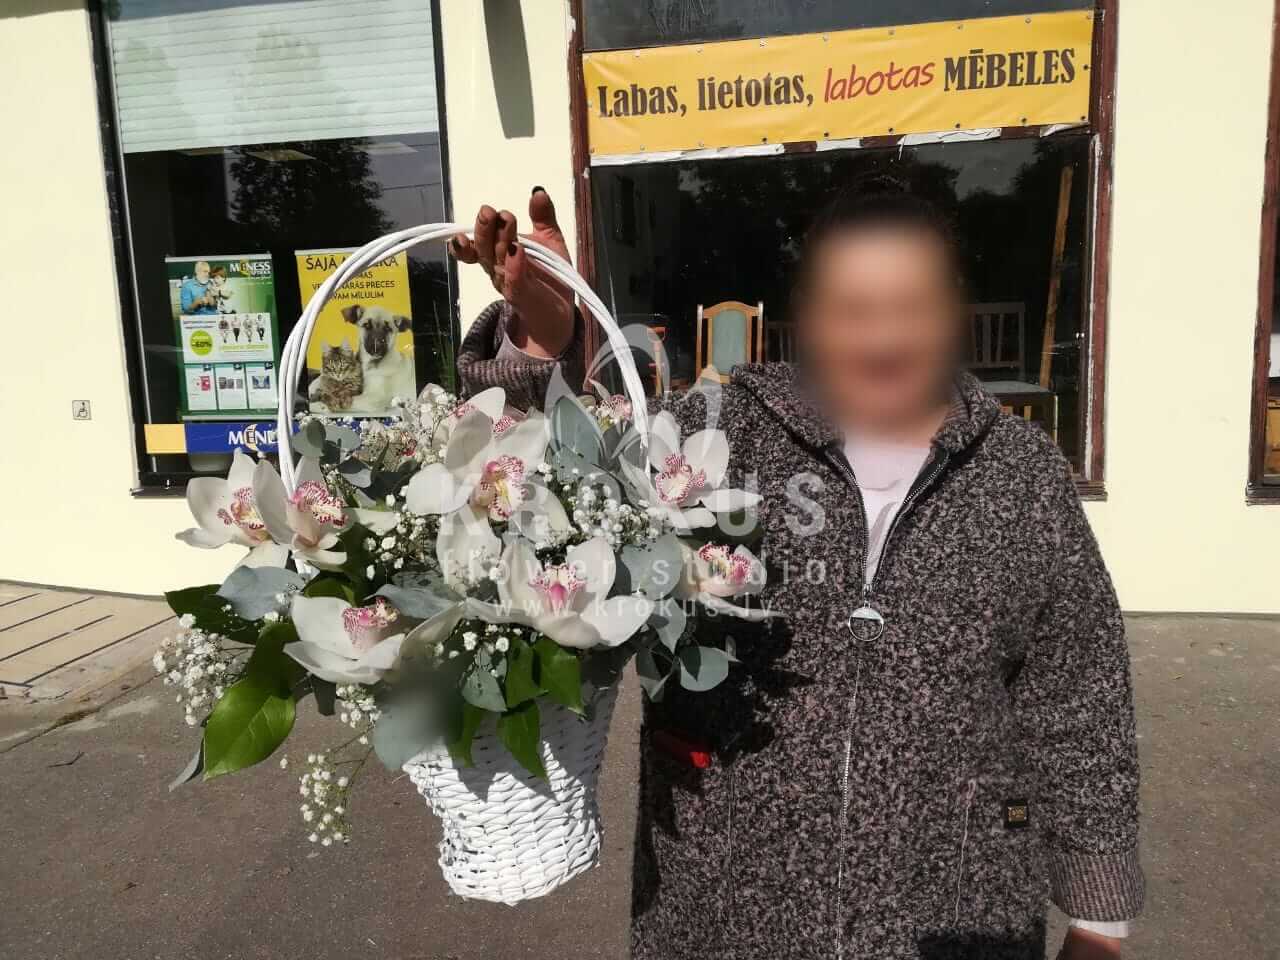 Доставка цветов в город Рига (гипсофилаорхидеиэвкалипт)